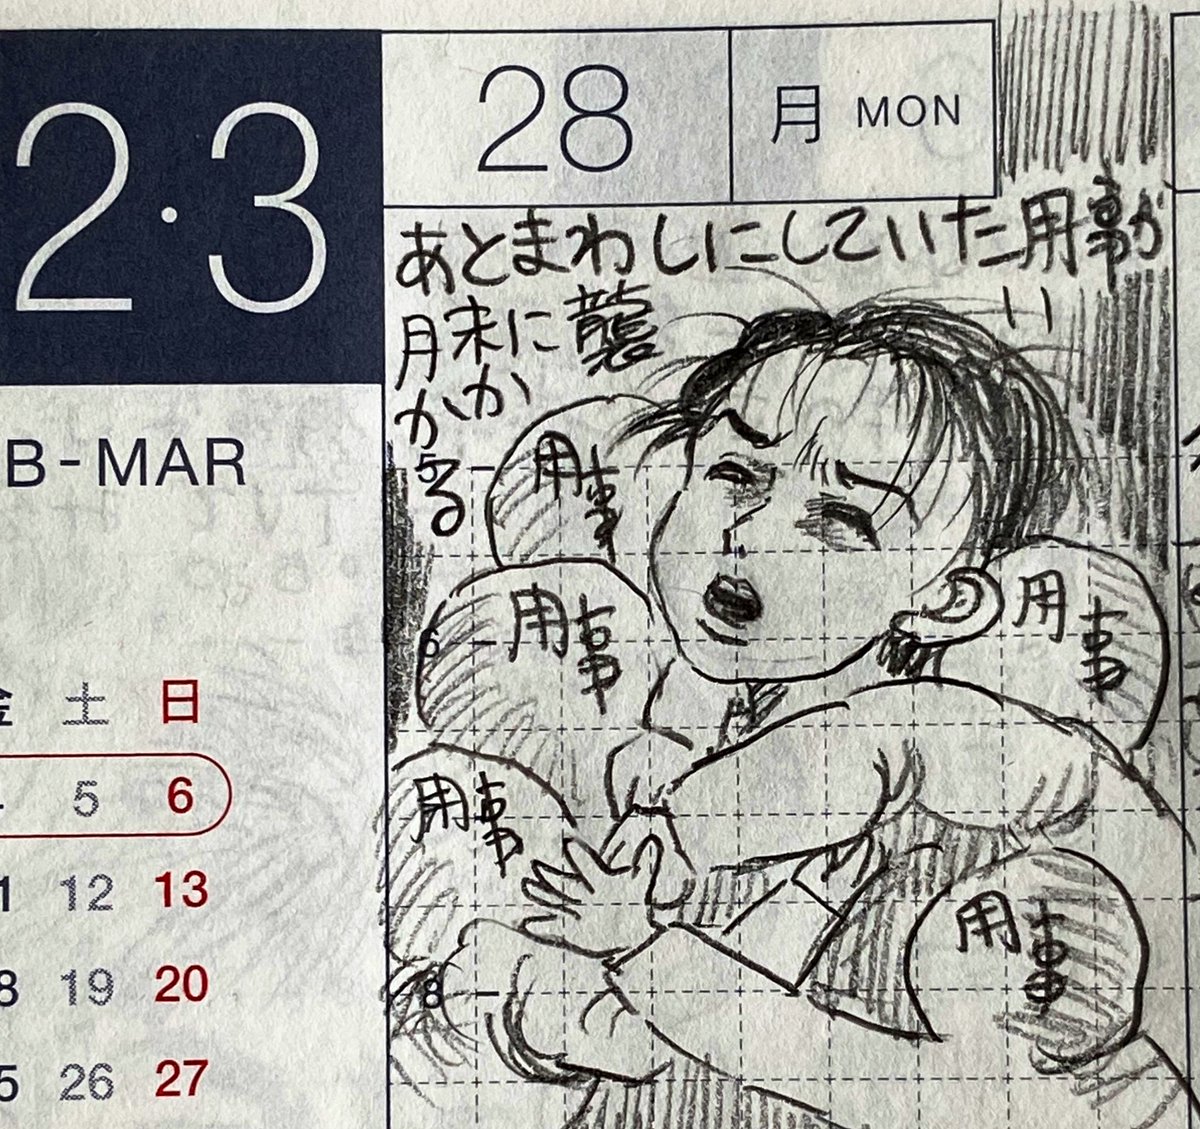 2月最終日と3月第一週の一コマ絵日記 1/2
つけが回ってくる、西川さん、美味しいエリーゼ、厚着の人など。
#一コマ絵日記 